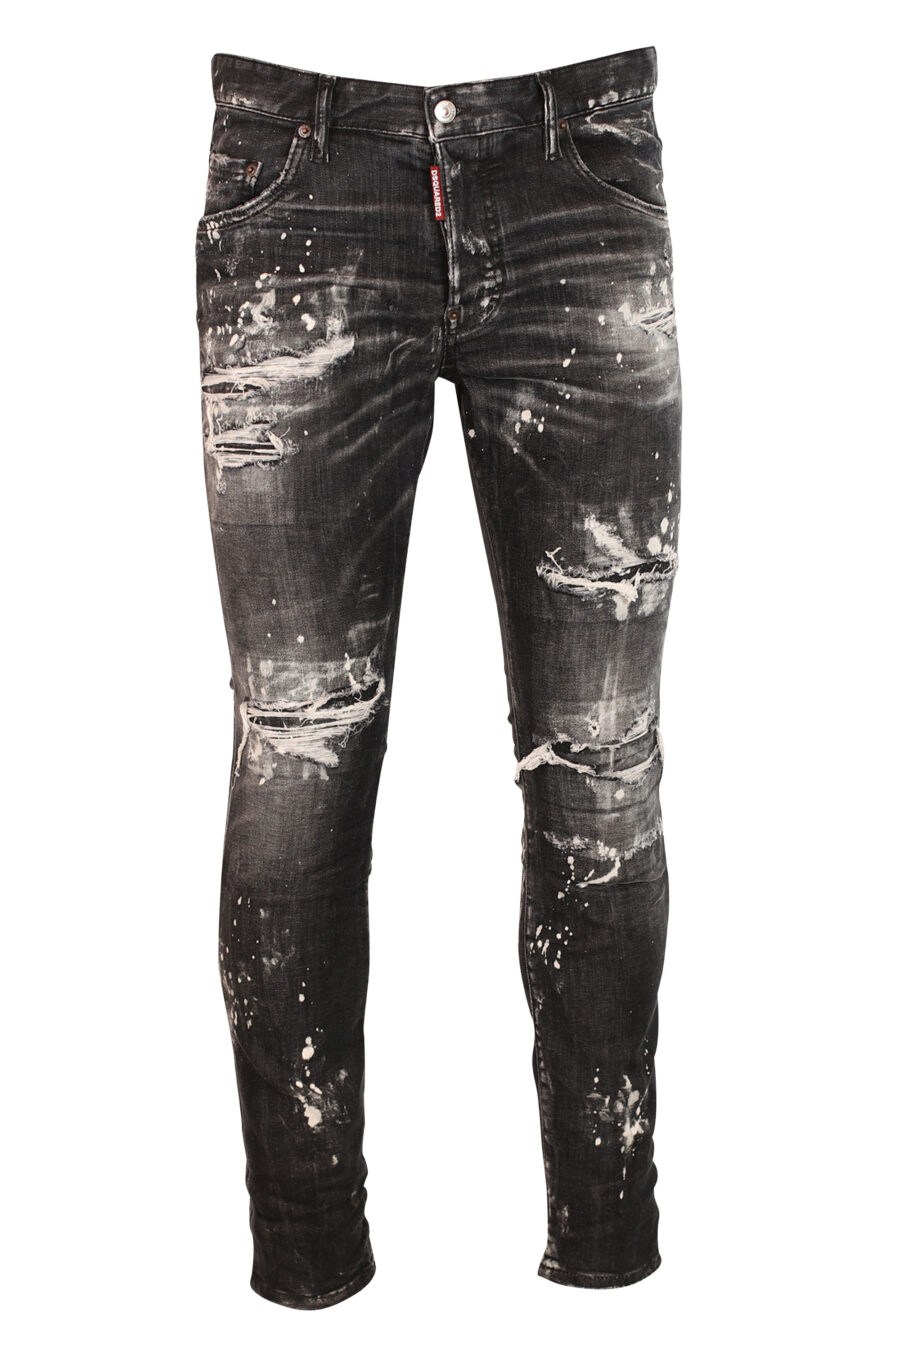 Skater-Jeans-Hose schwarz abgenutzt mit Rissen - 8052134938102